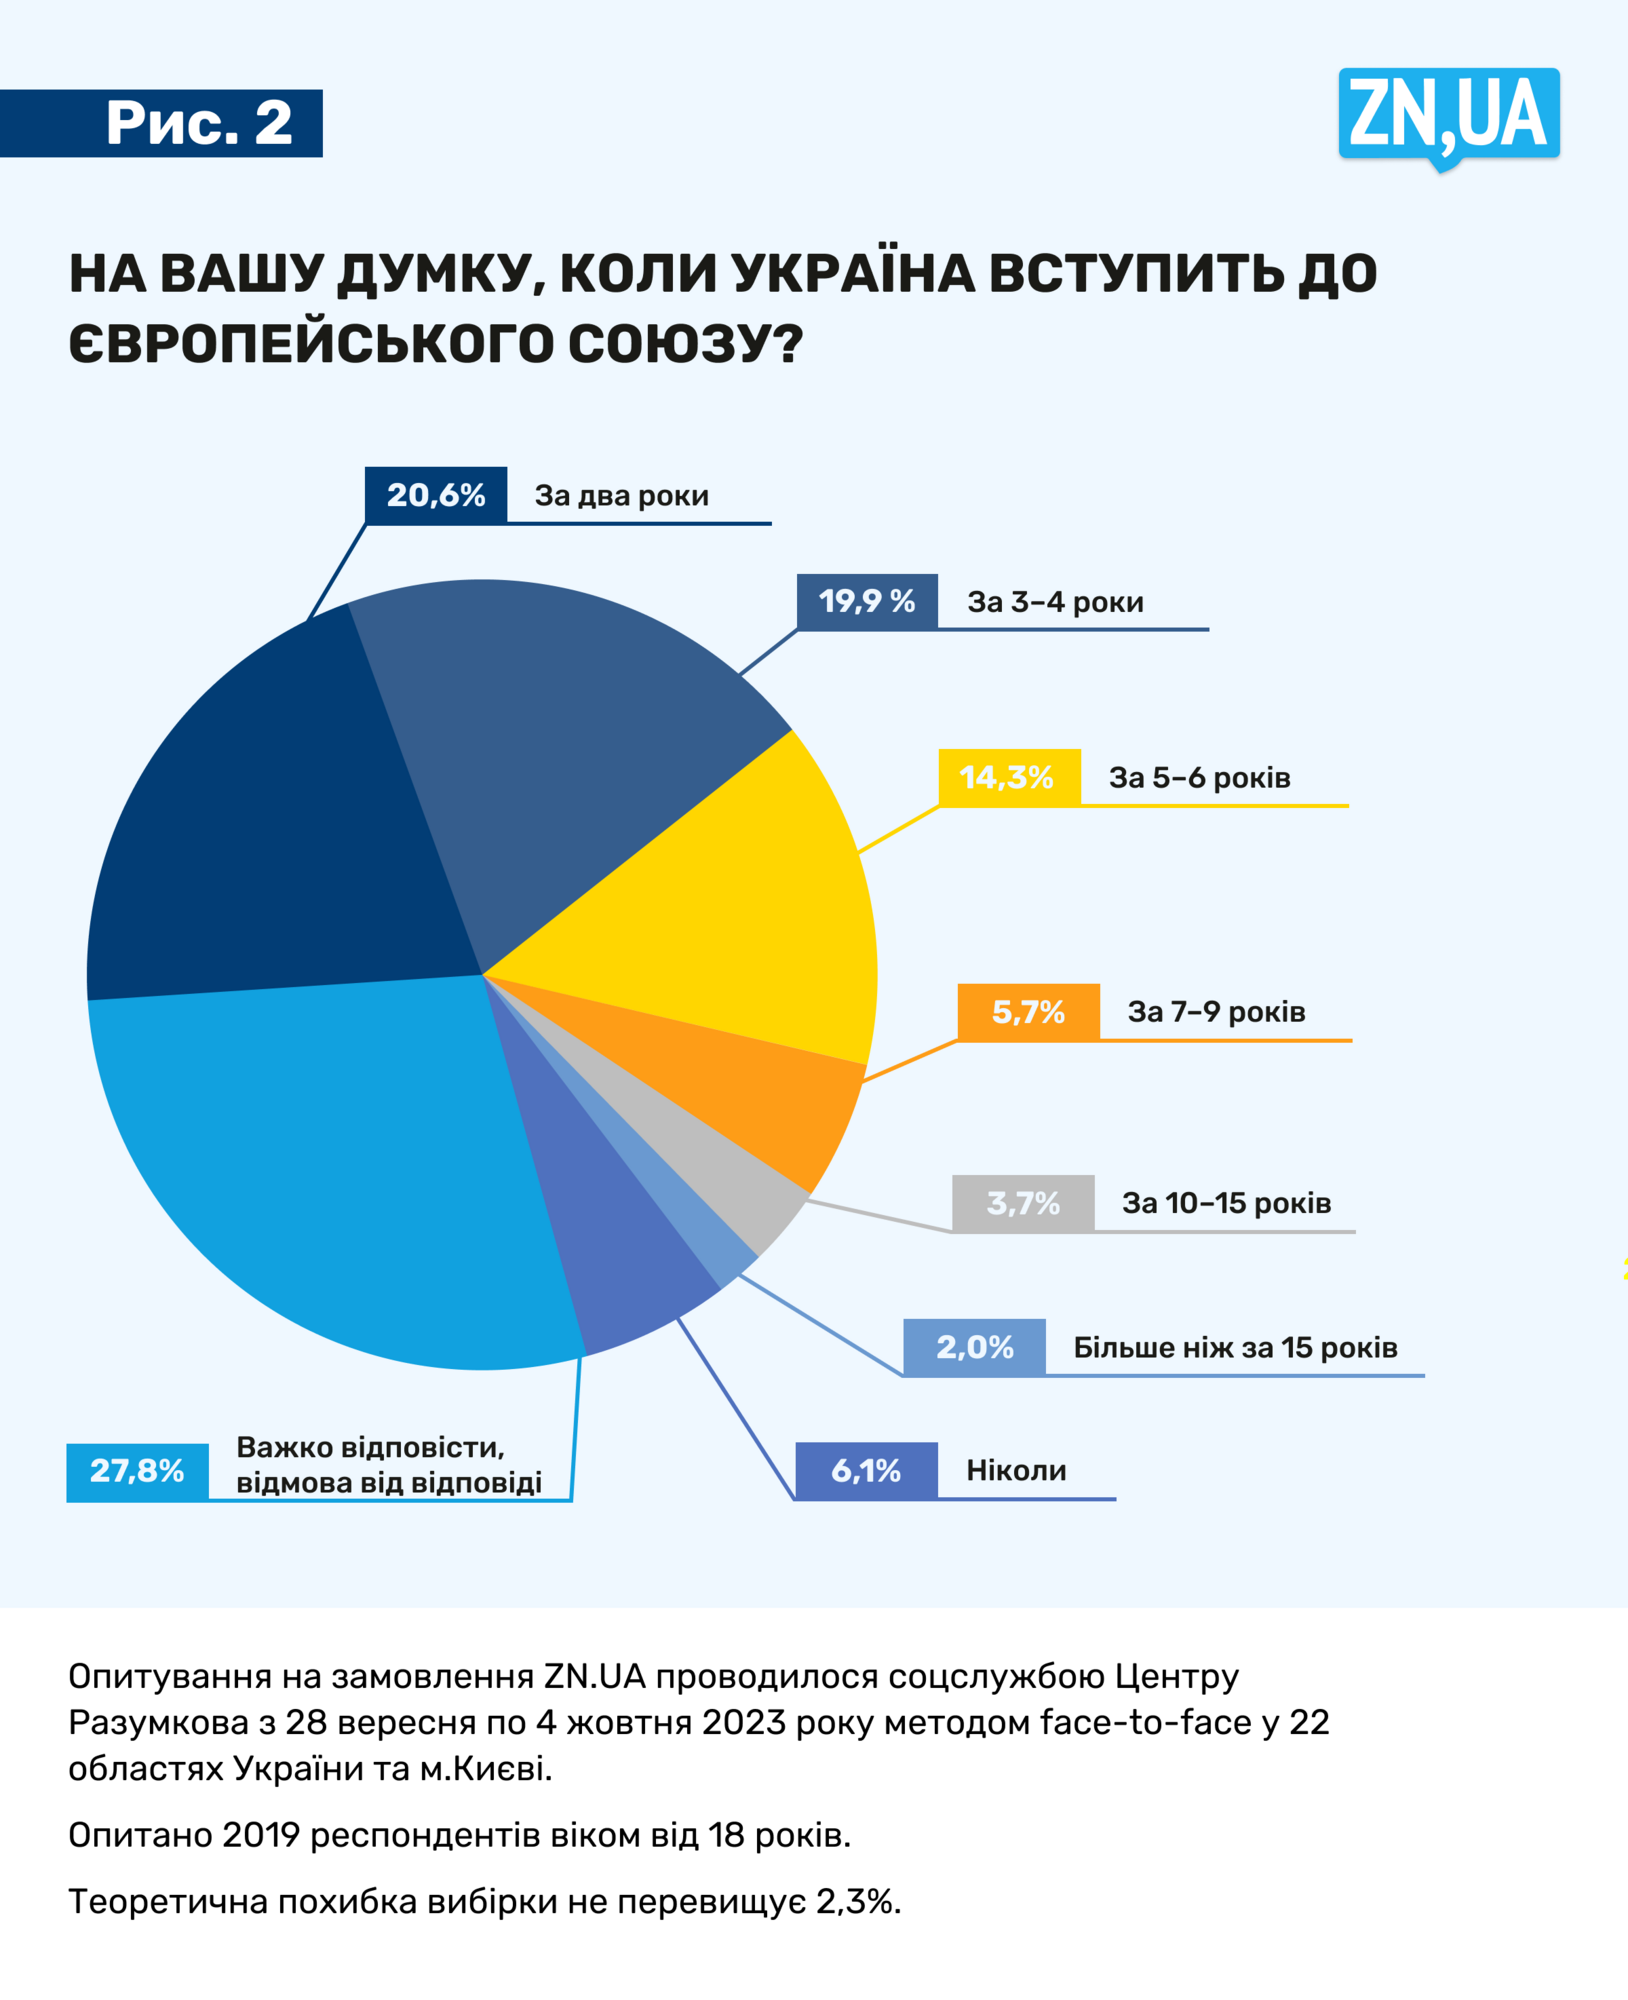 Ukraińcy chcą zwycięstwa, wyzwolenia okupowanych terytoriów i przystąpienia do NATO i UE: wyniki sondażu